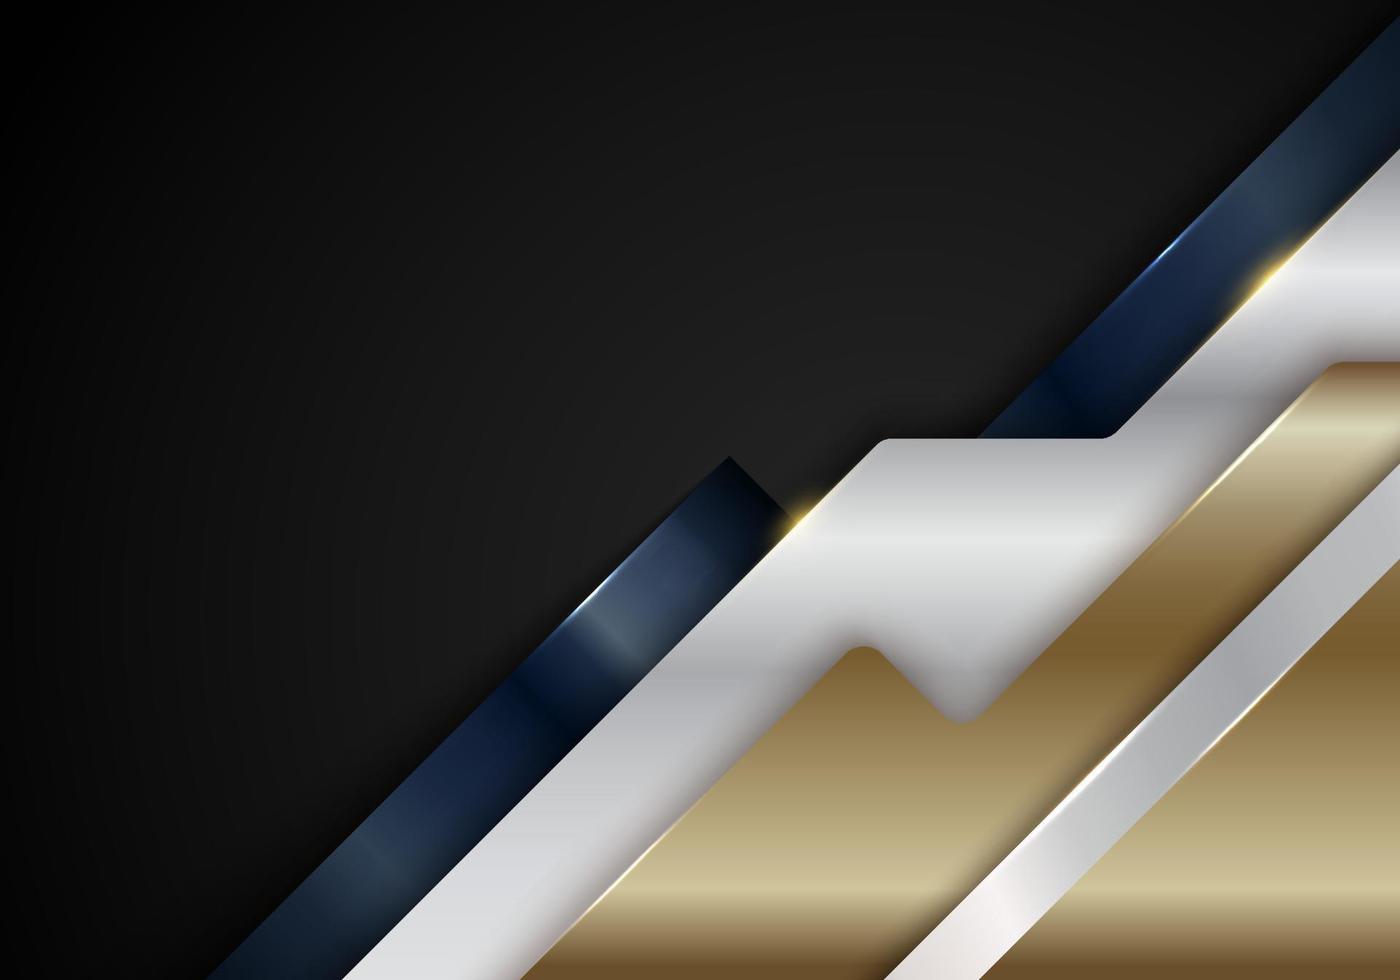 abstracte blauwe, gouden, witte metalen diagonale strepen geometrische vormen met glanzende gouden lijnen op zwarte achtergrond luxe stijl vector